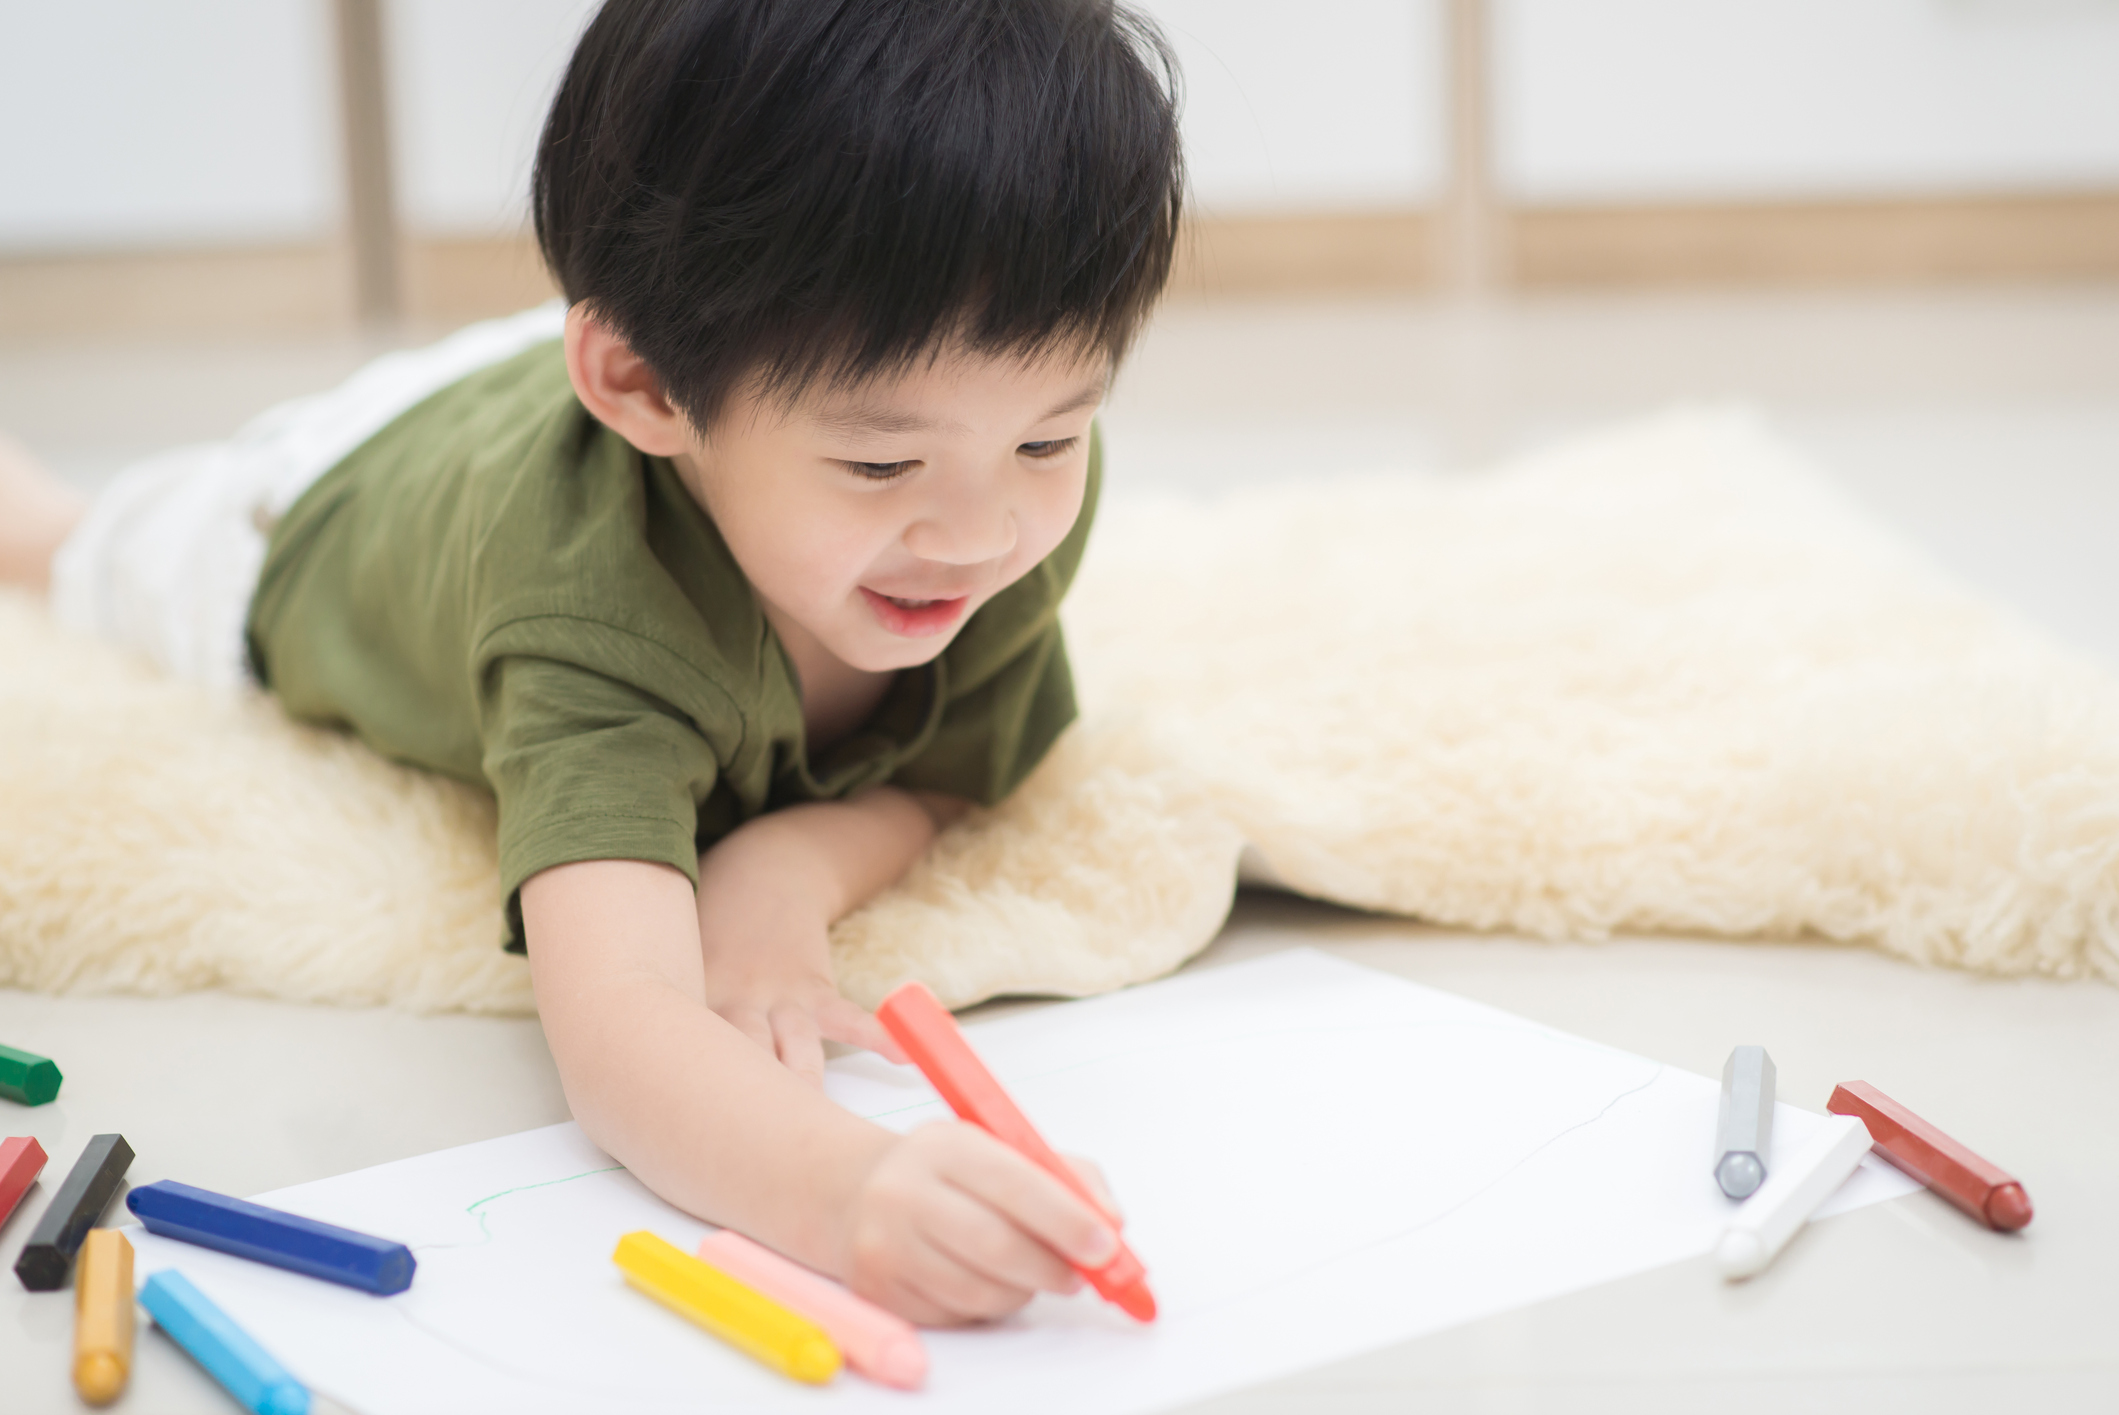 Cunoașterea metodei educaționale Montessori: eliberarea copiilor să exploreze